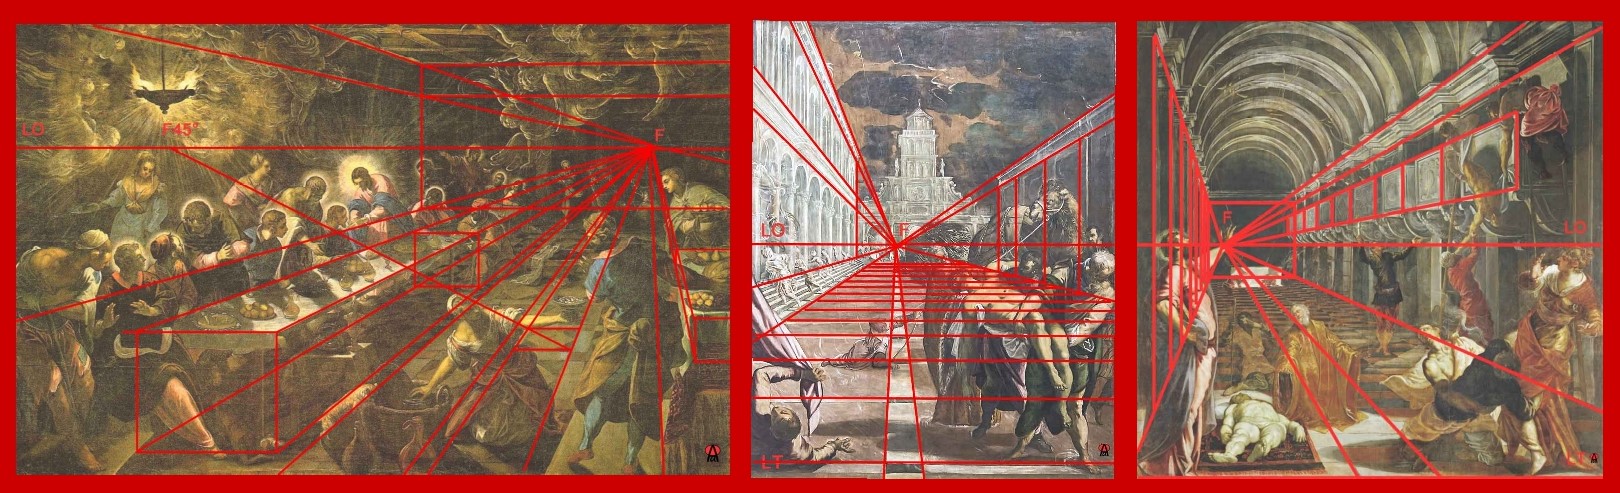 Dipinti di Tinoretto con graficizzazione in rosso della prospettiva centrale